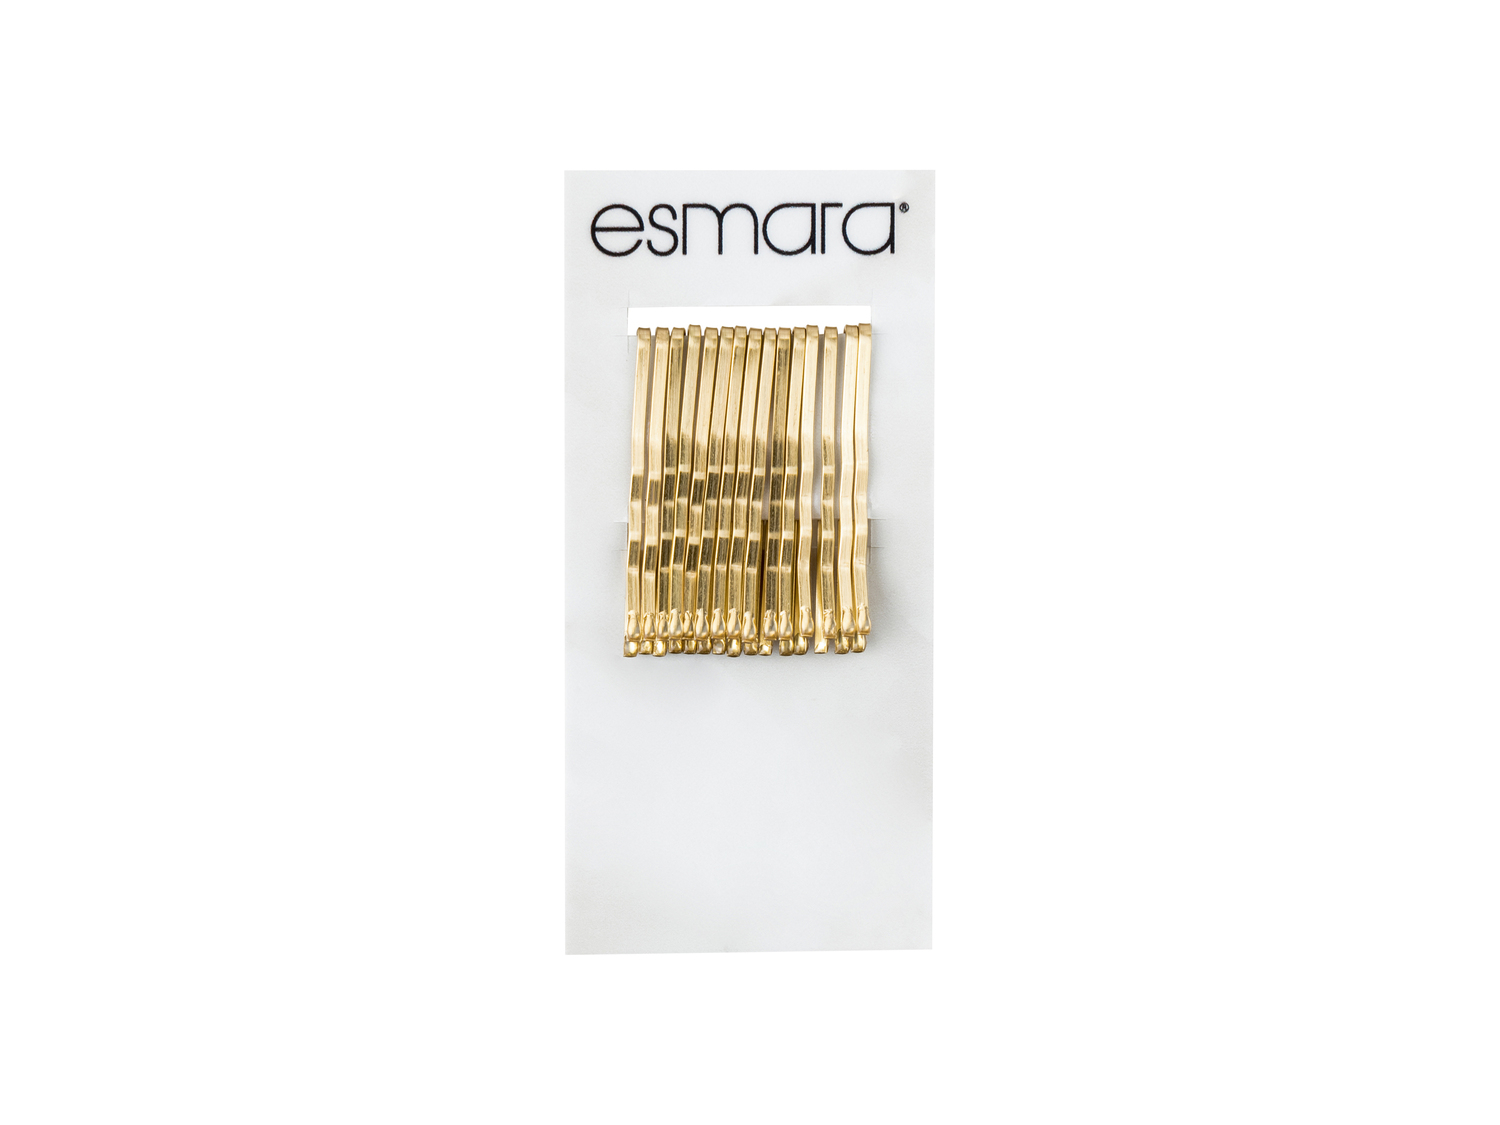 Accessori per capelli Esmara, prezzo 1.49 &#8364;  

Caratteristiche